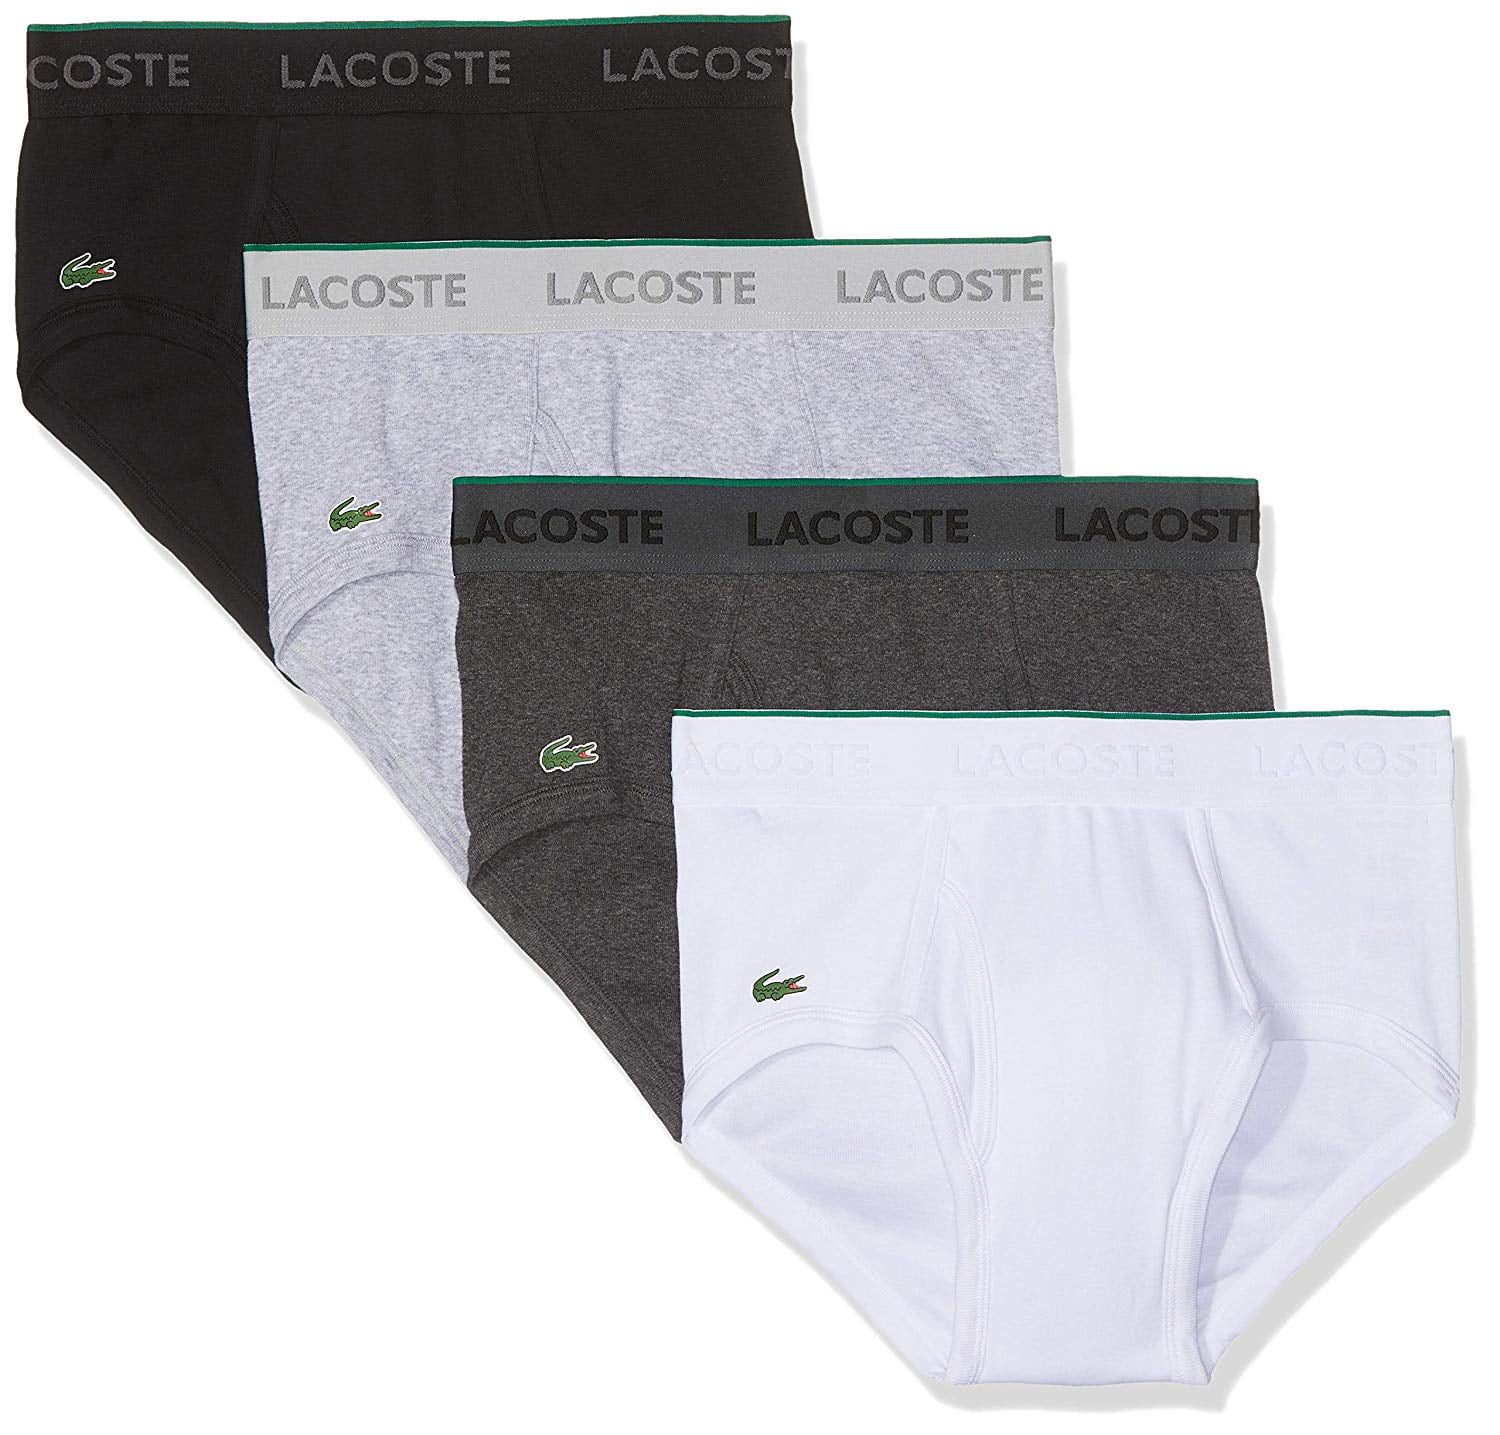 Lacoste Men's Essentials 100% Cotton Underwear Brief, Multipack